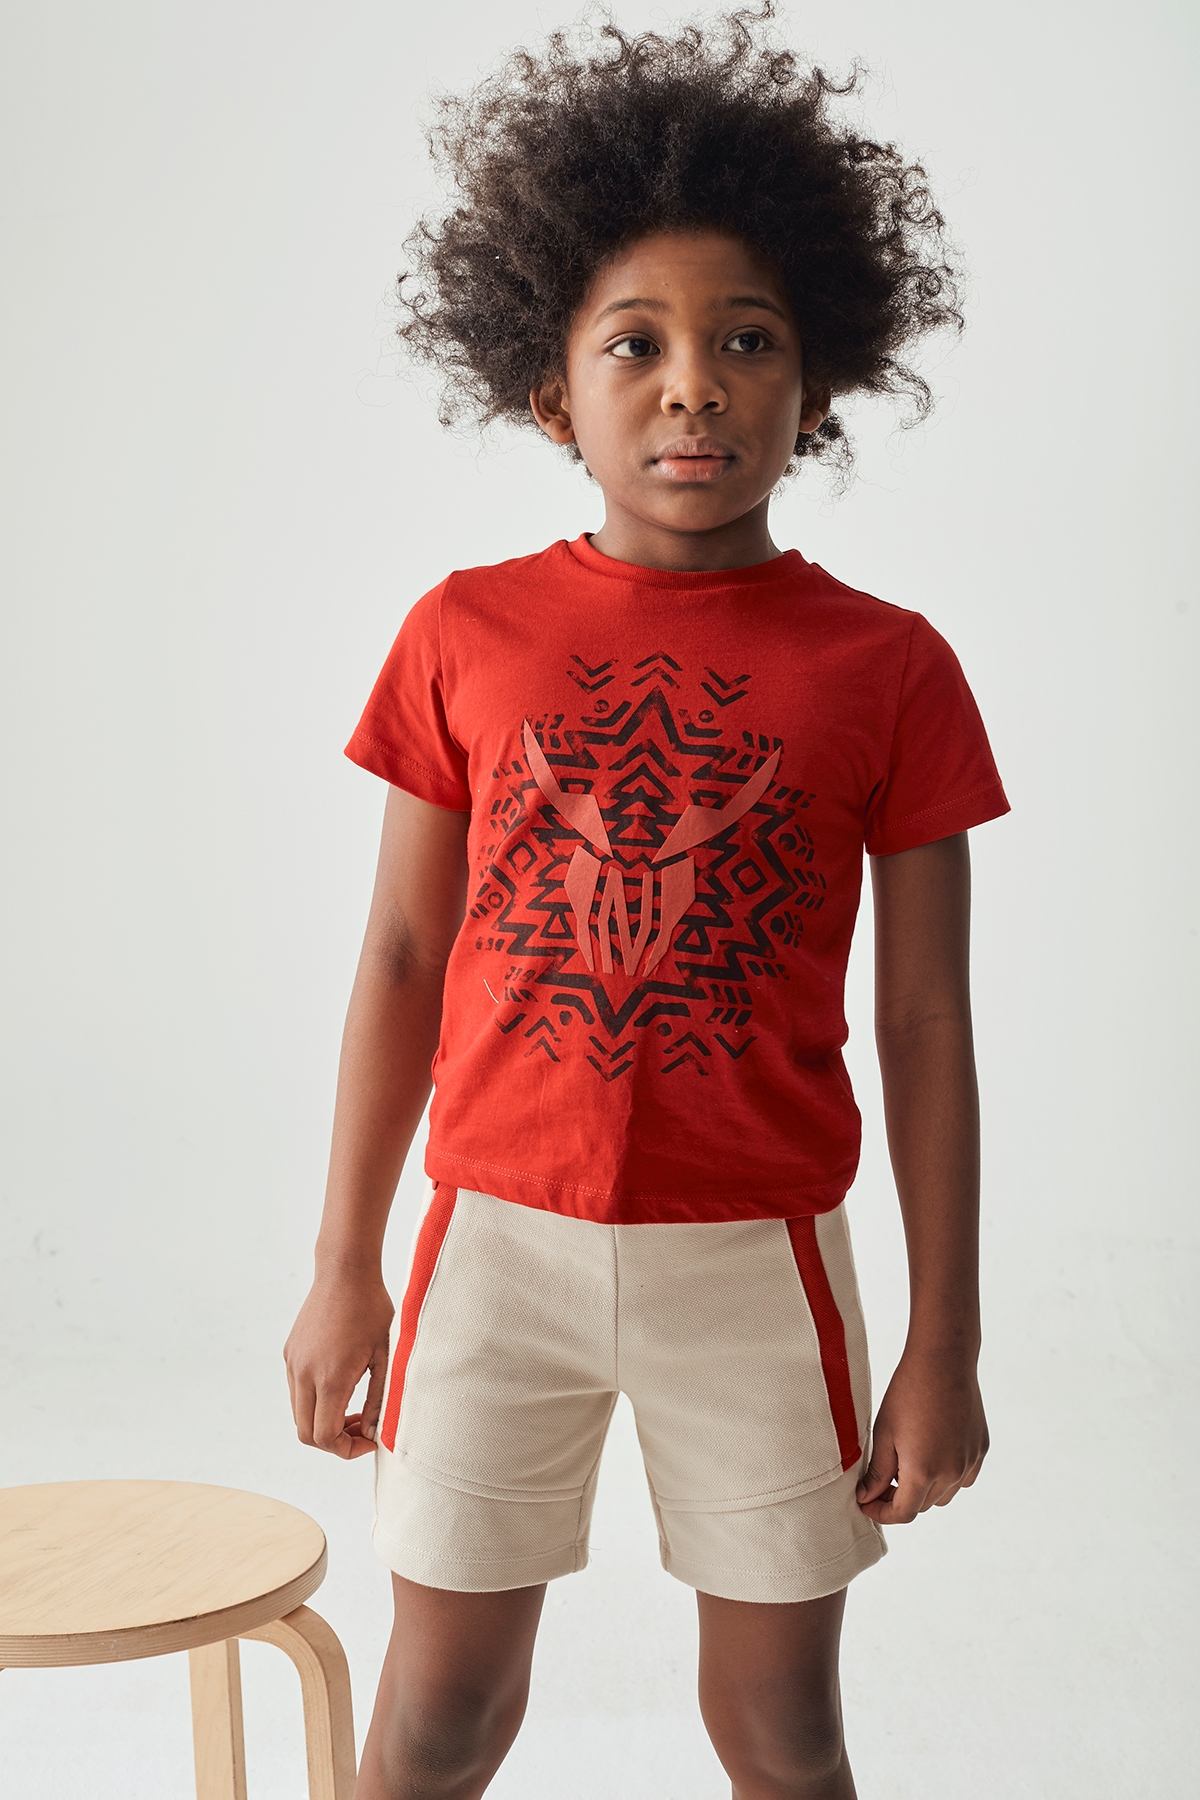 Erkek Çocuk Kırmızı T-Shirt